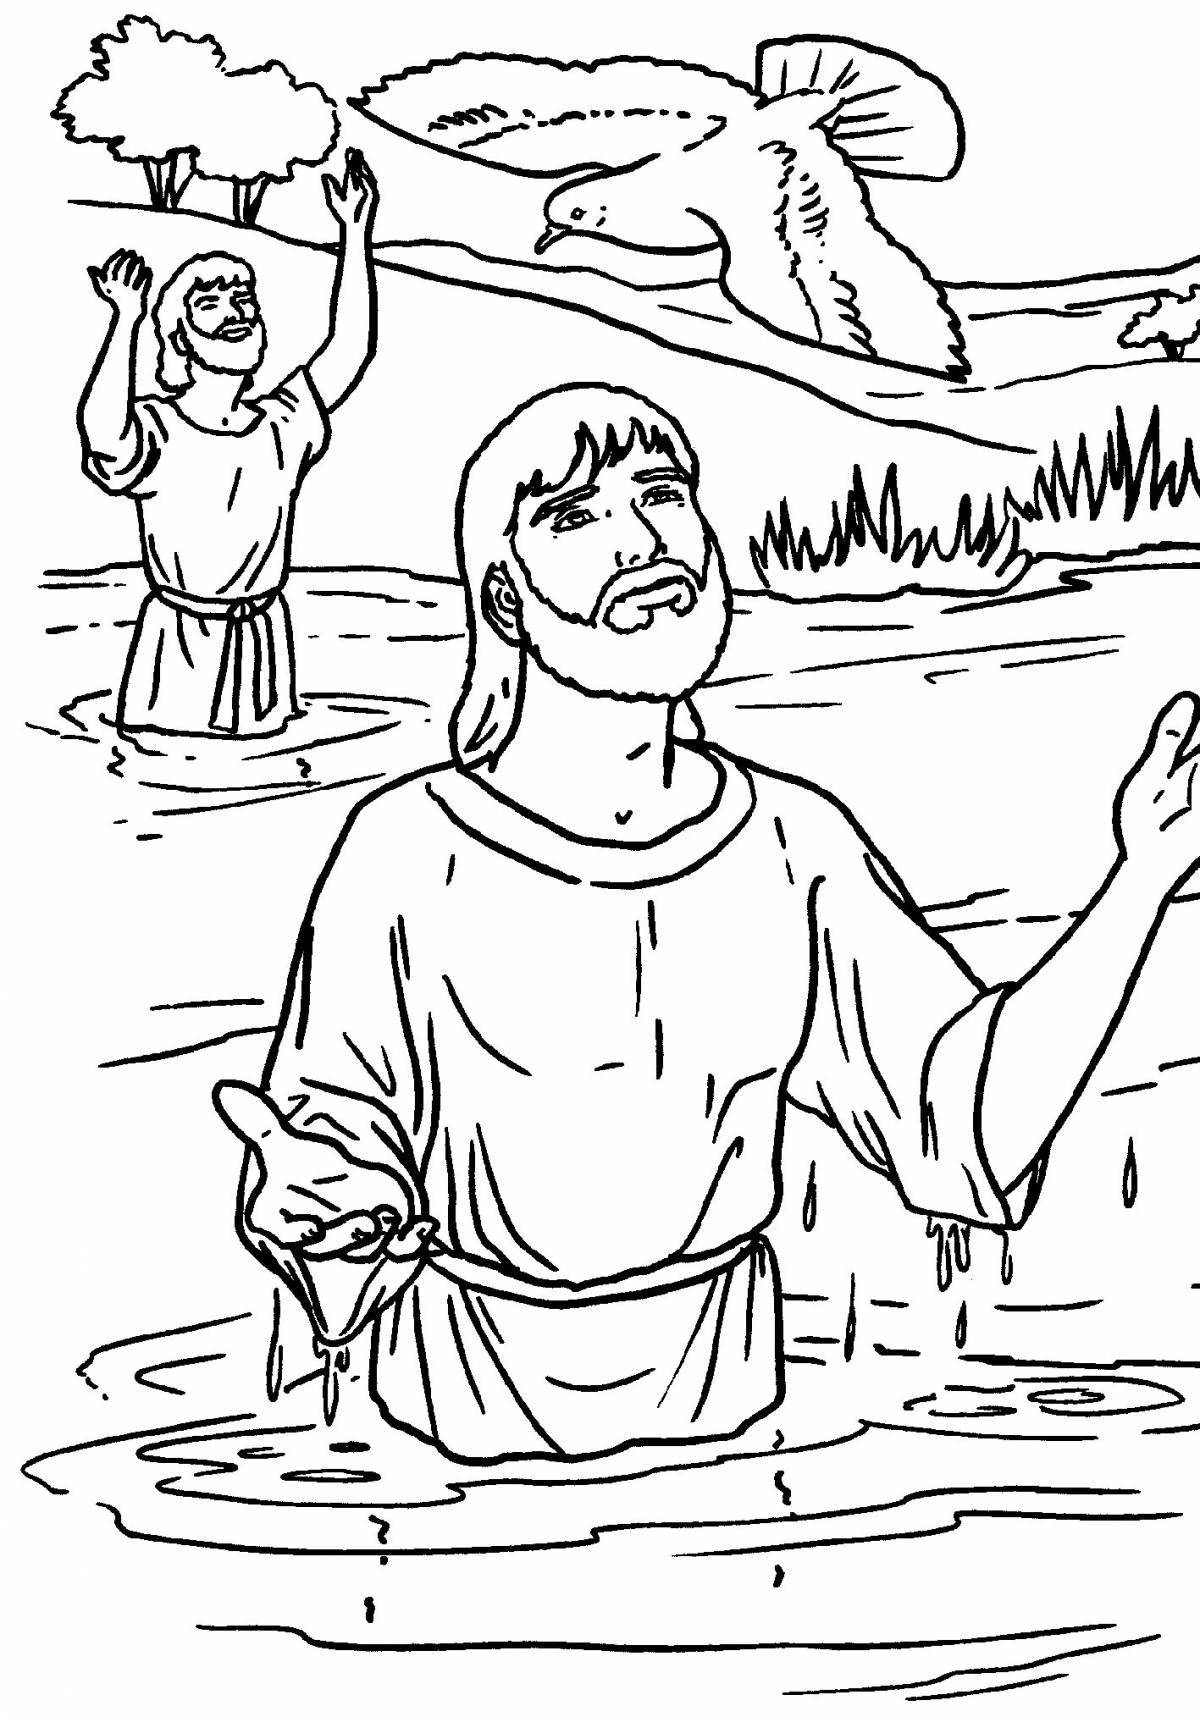 Радостная раскраска крещение руси для детей